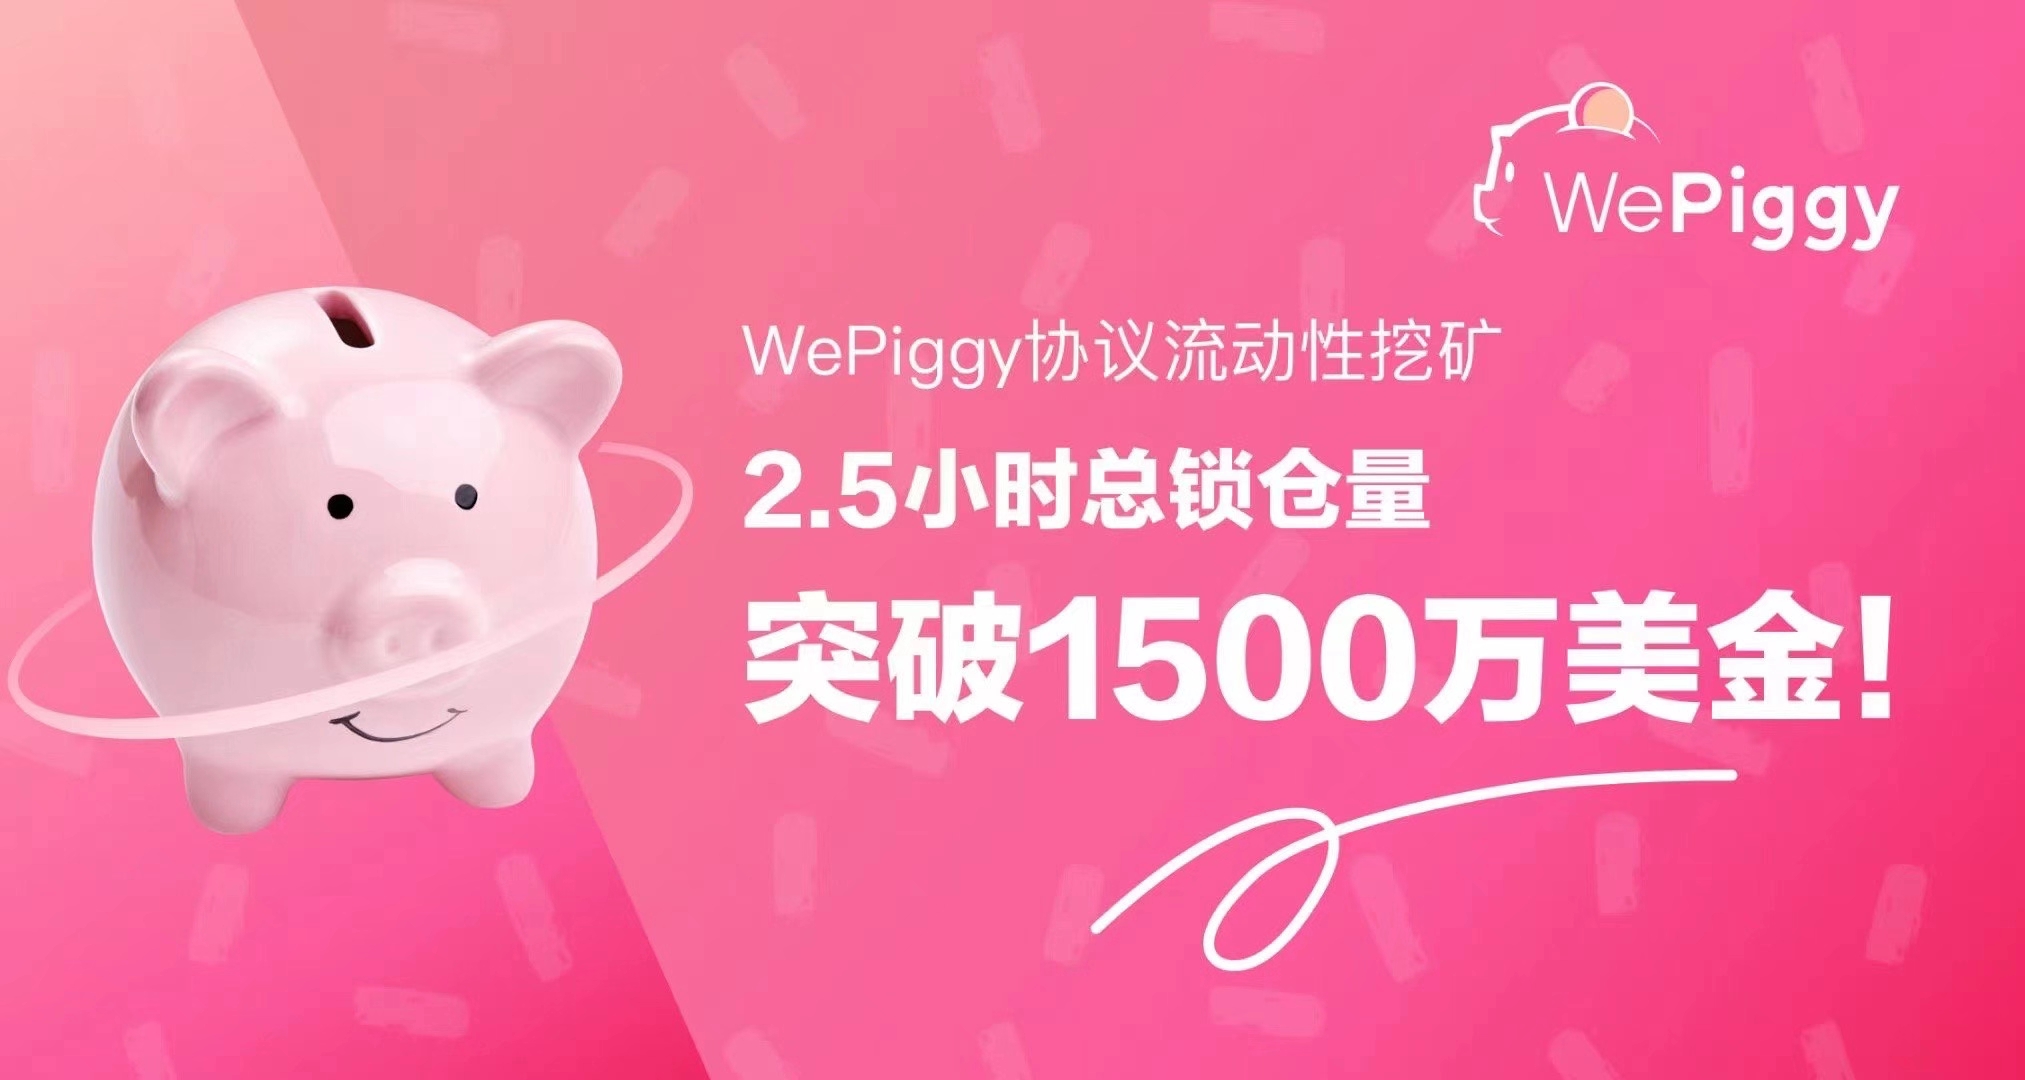 WePiggy 勾当性挖矿正式开启，总锁仓量已冲破1800万USDT